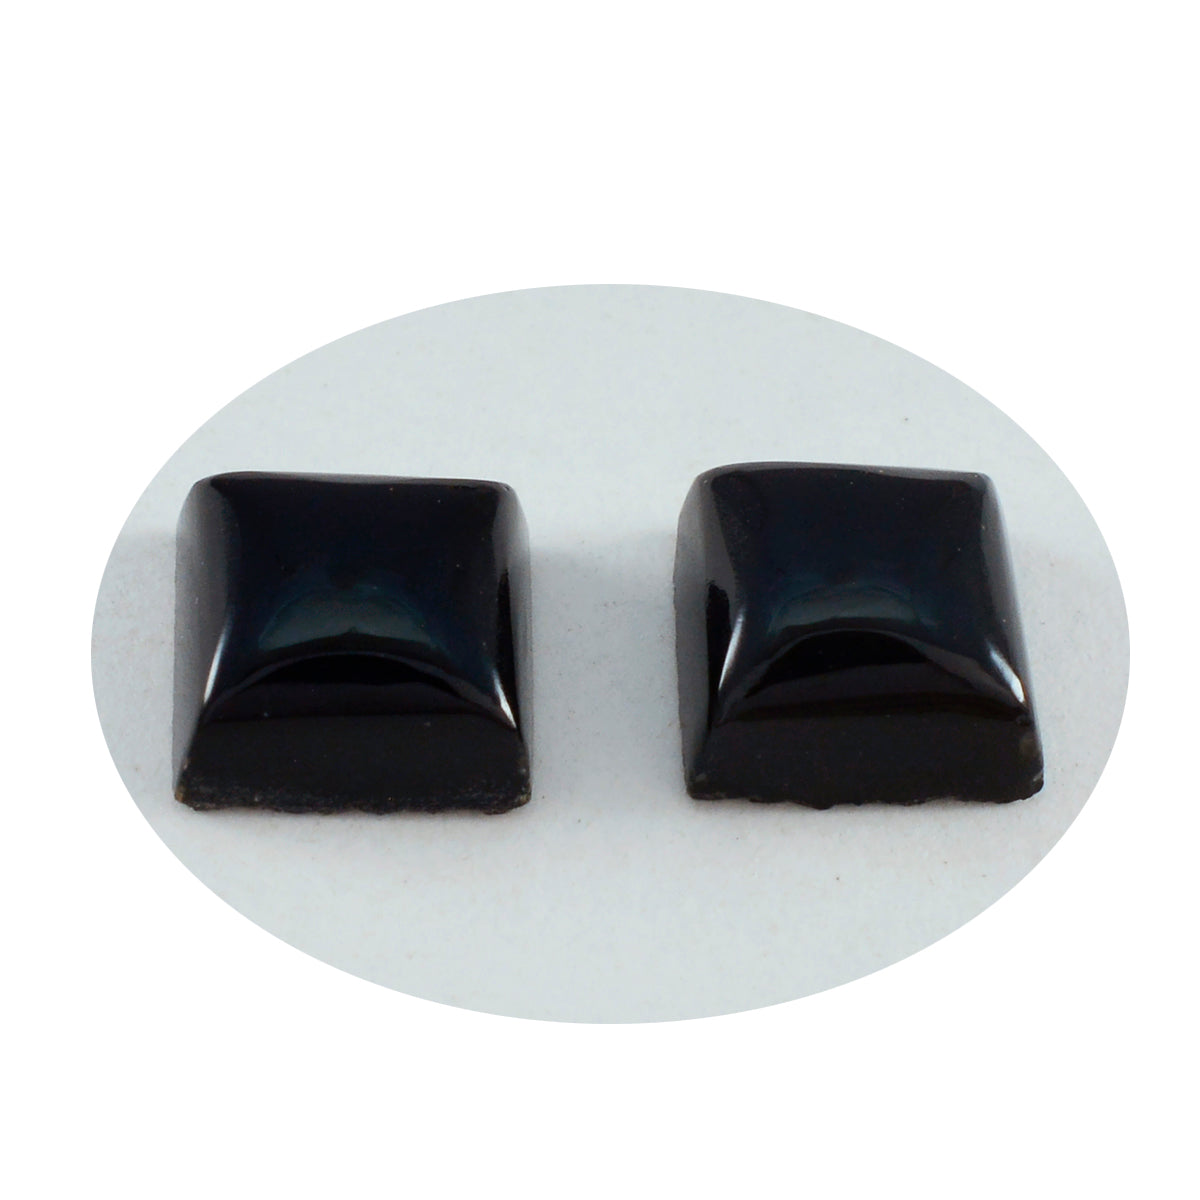 Riyogems 1 pieza cabujón de ónix negro 14x14 mm forma cuadrada piedra preciosa de calidad impresionante